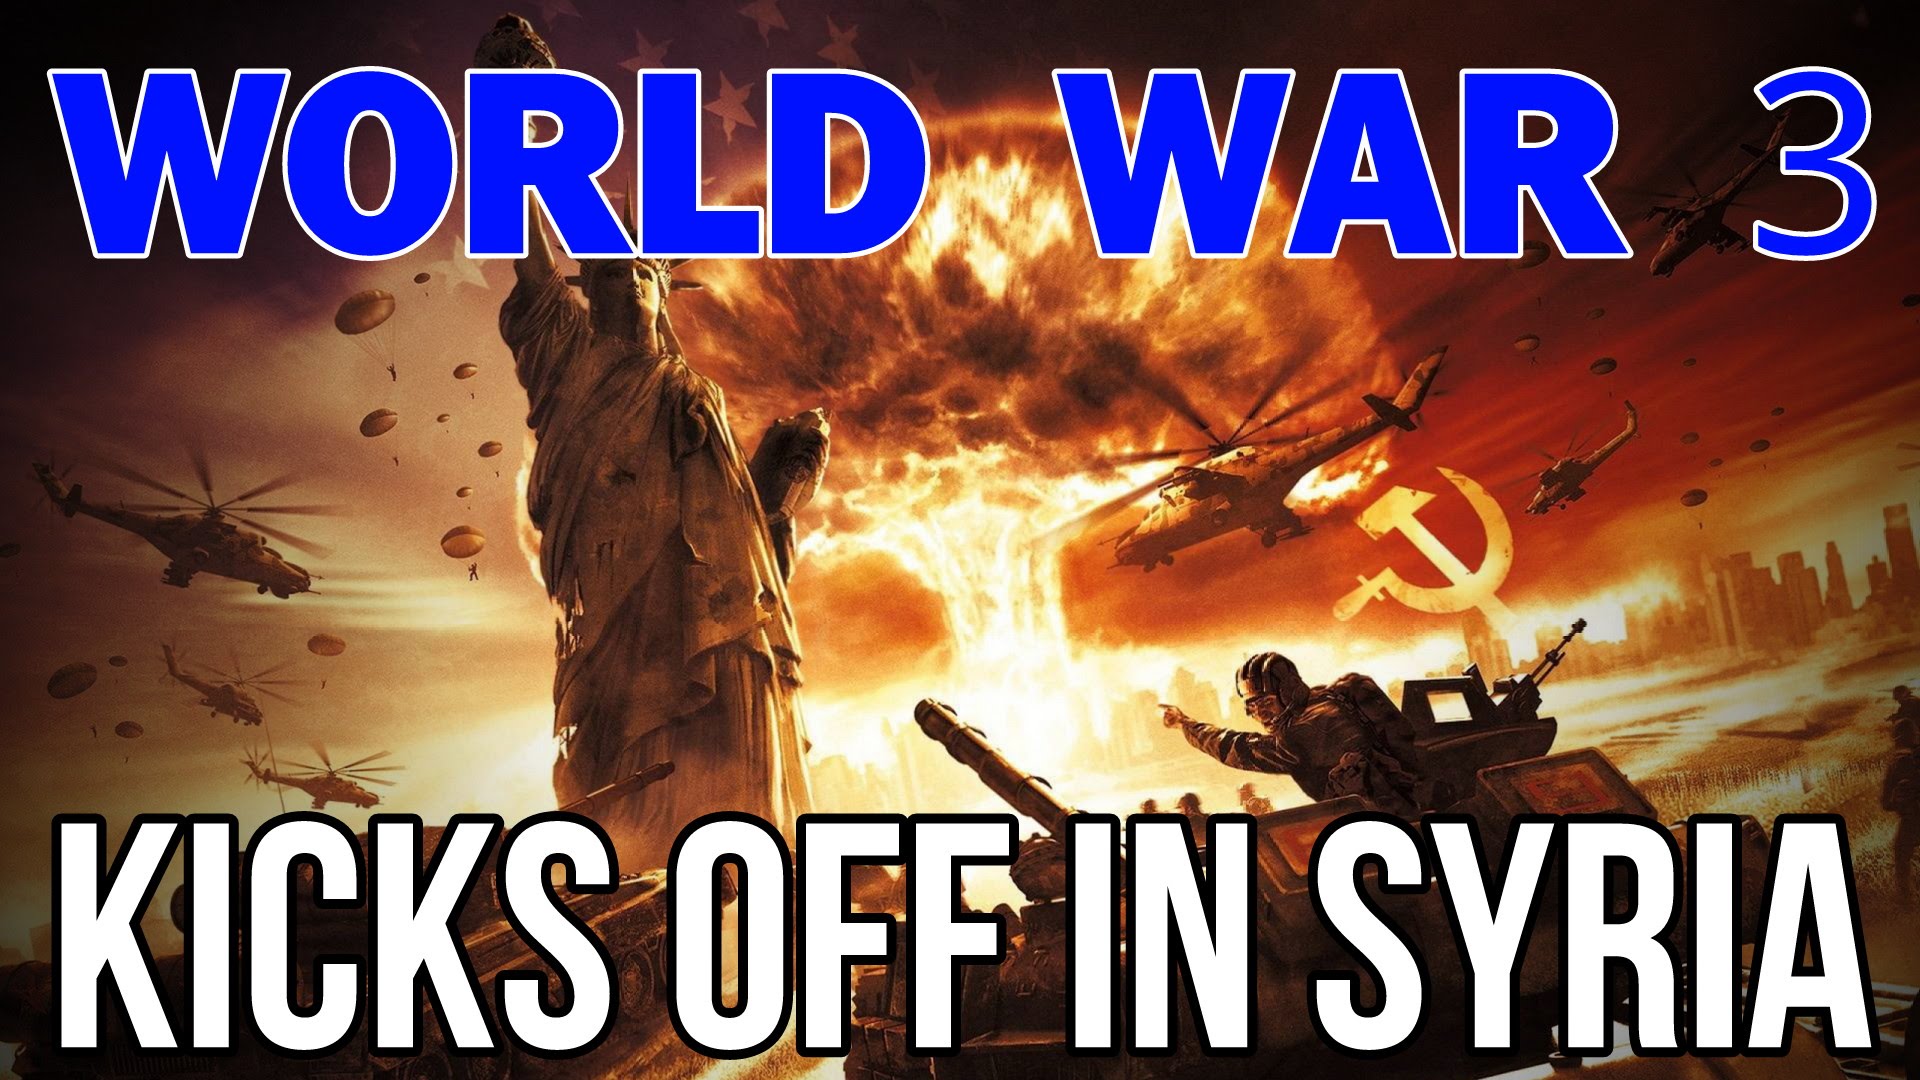 WORLD WAR 3 KICKS OFF IN SYRIA